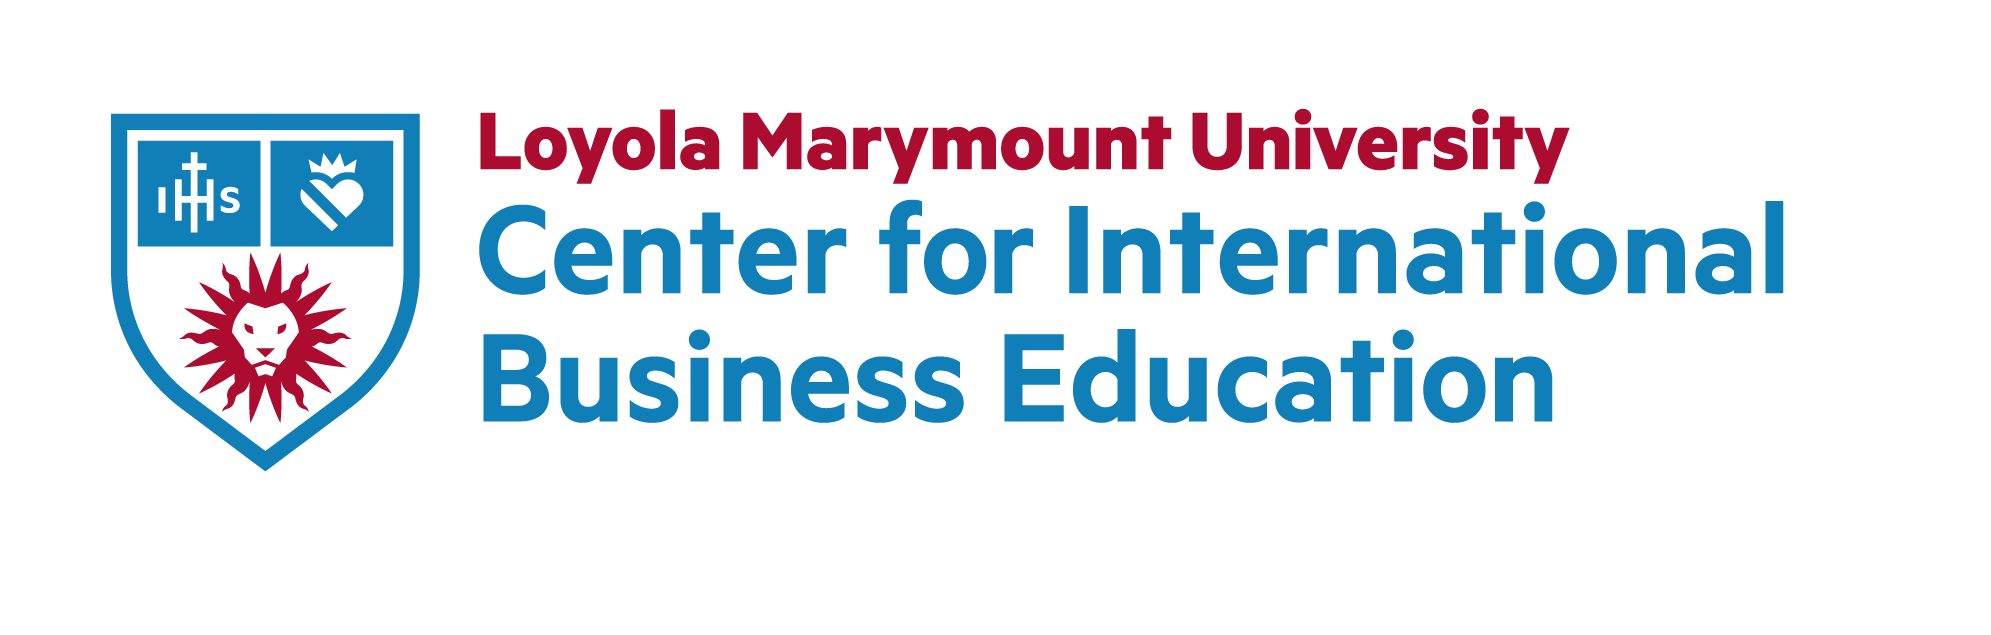 Loyola Marymount University Center for International Business Education logo